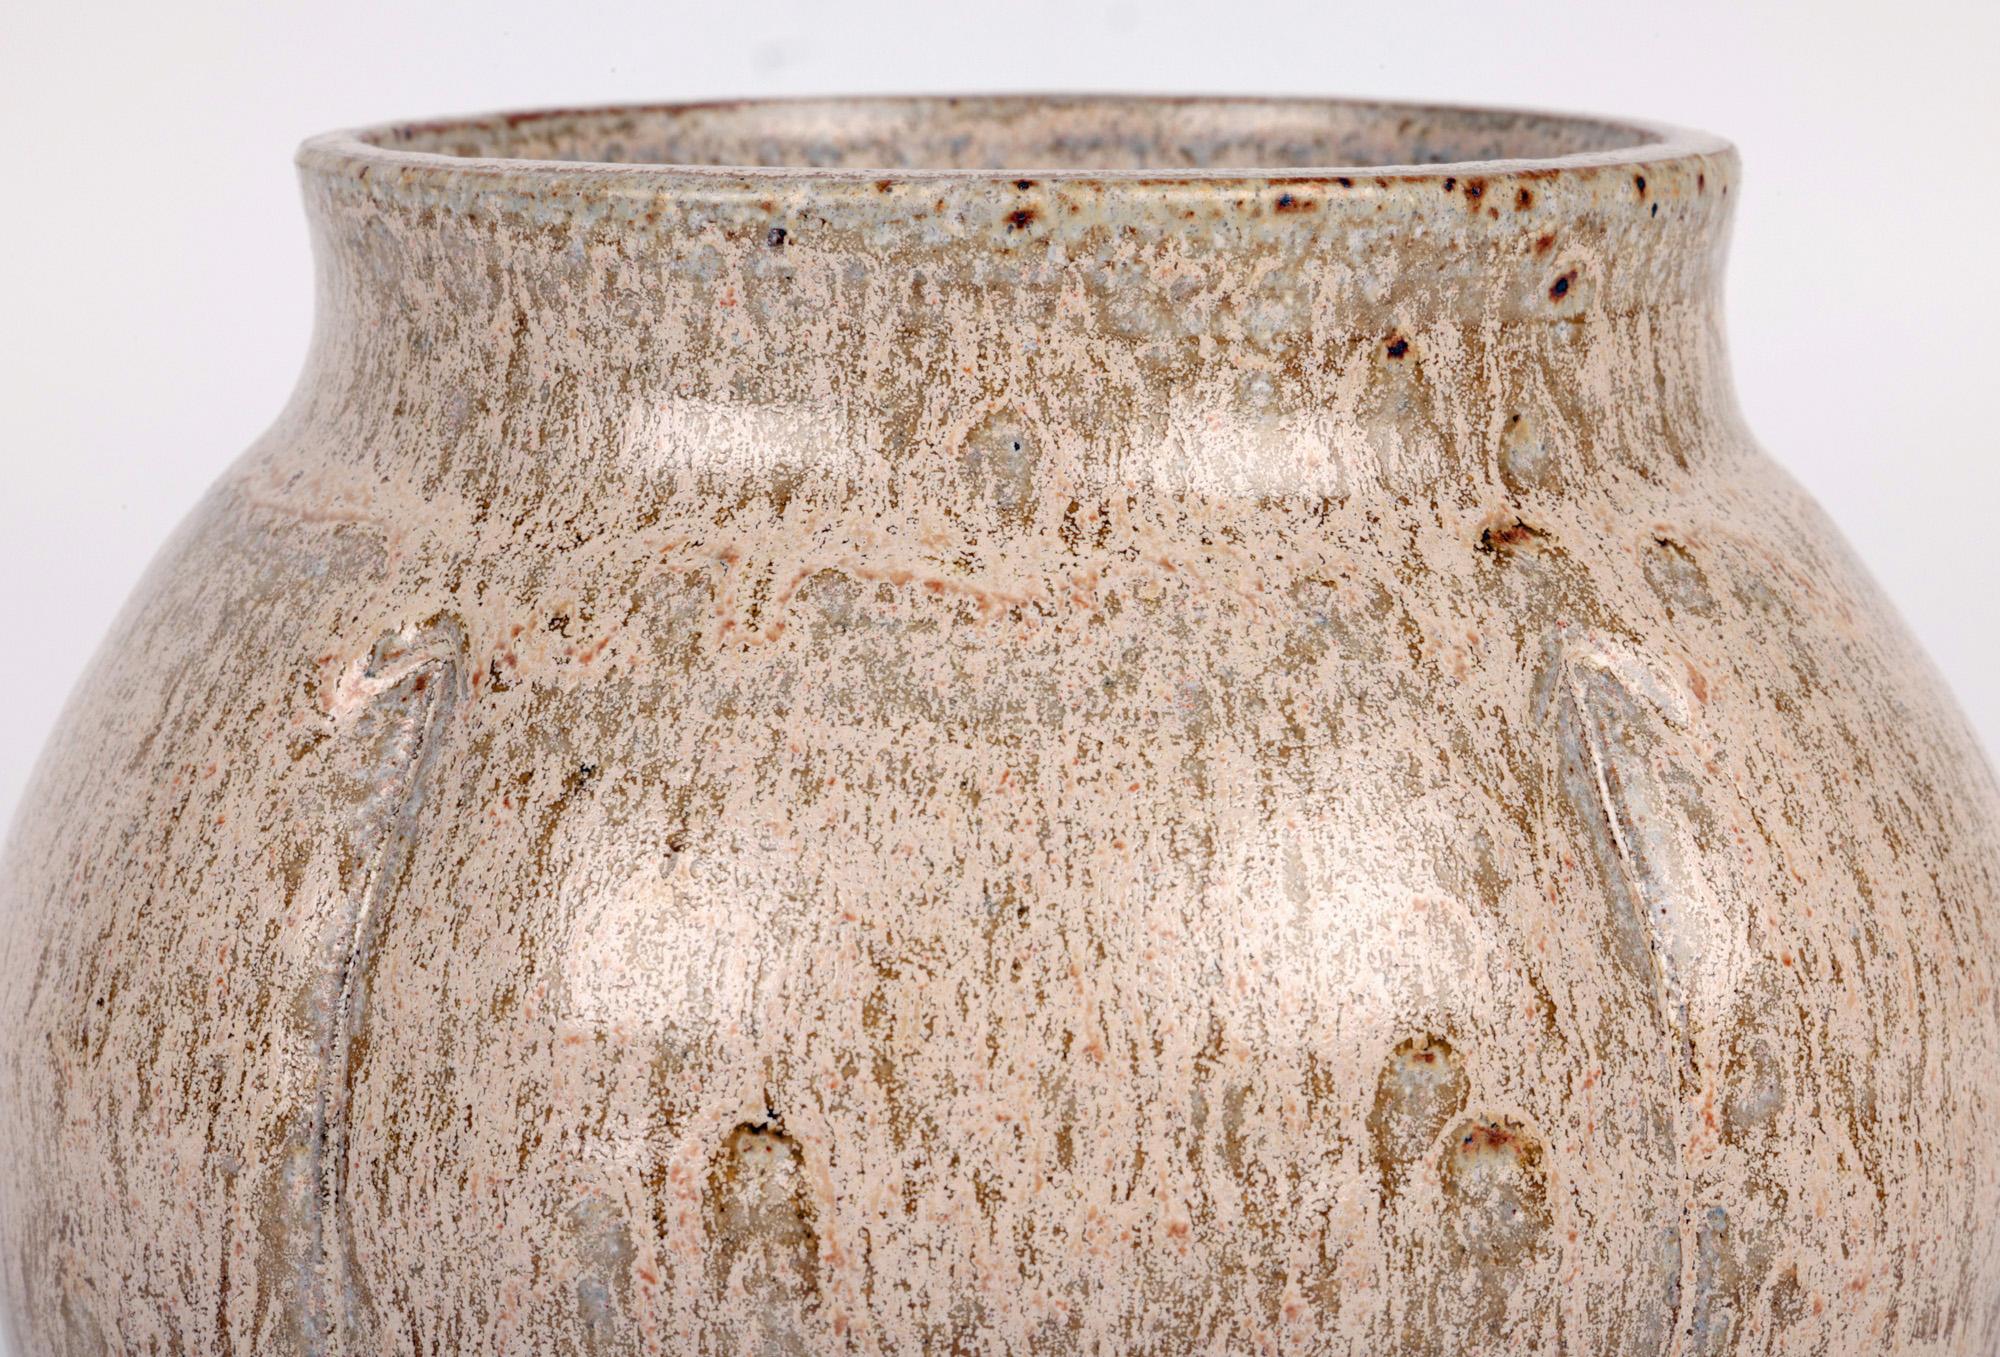 Un superbe vase en poterie de studio émaillée à l'avoine de la célèbre potière Sonia Lewis, basée dans le Cambridgeshire, acquis auprès d'une grande collection et datant vraisemblablement de la fin du 20e siècle. Ce vase en grès finement potassé